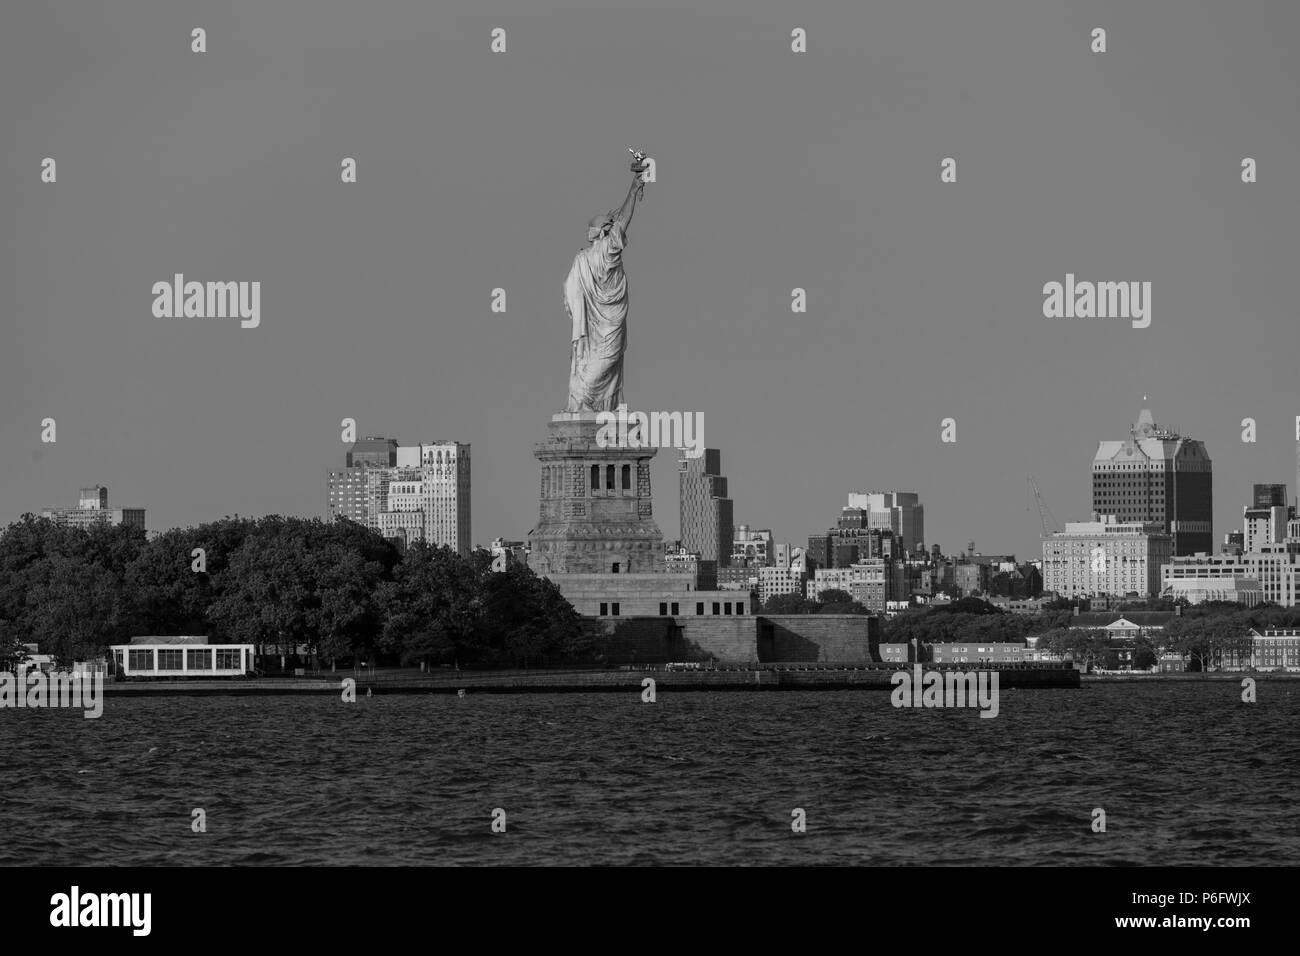 7 juin 2018, New York, NY, USA - Statue de la liberté se retourne vers Brooklynm, NY Banque D'Images